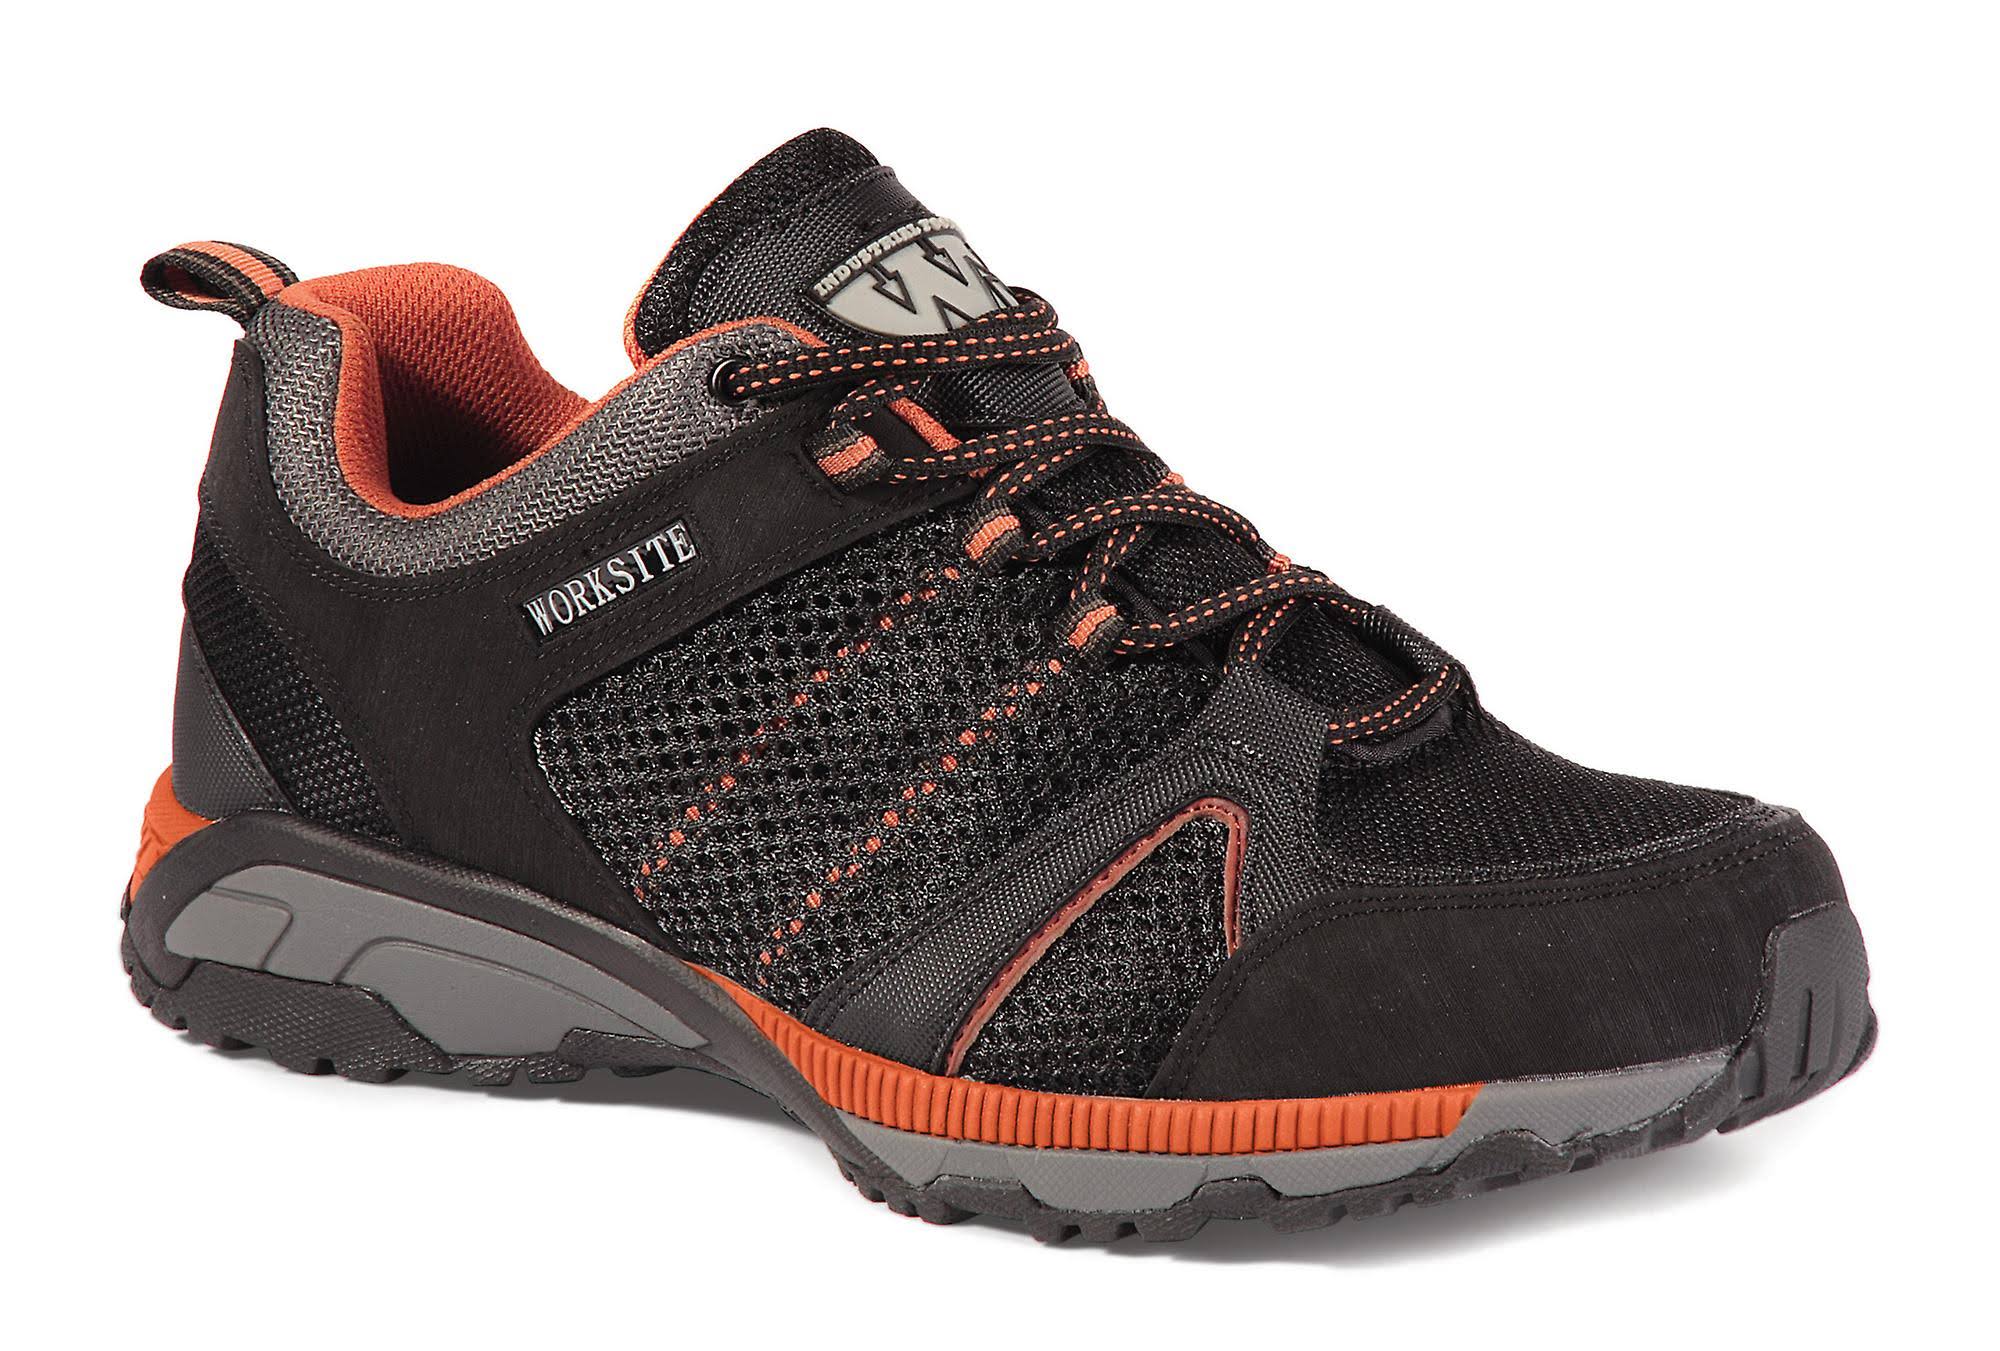 Worksite Men's Safety Trainer Shoes - Black and Orange, 10 UK